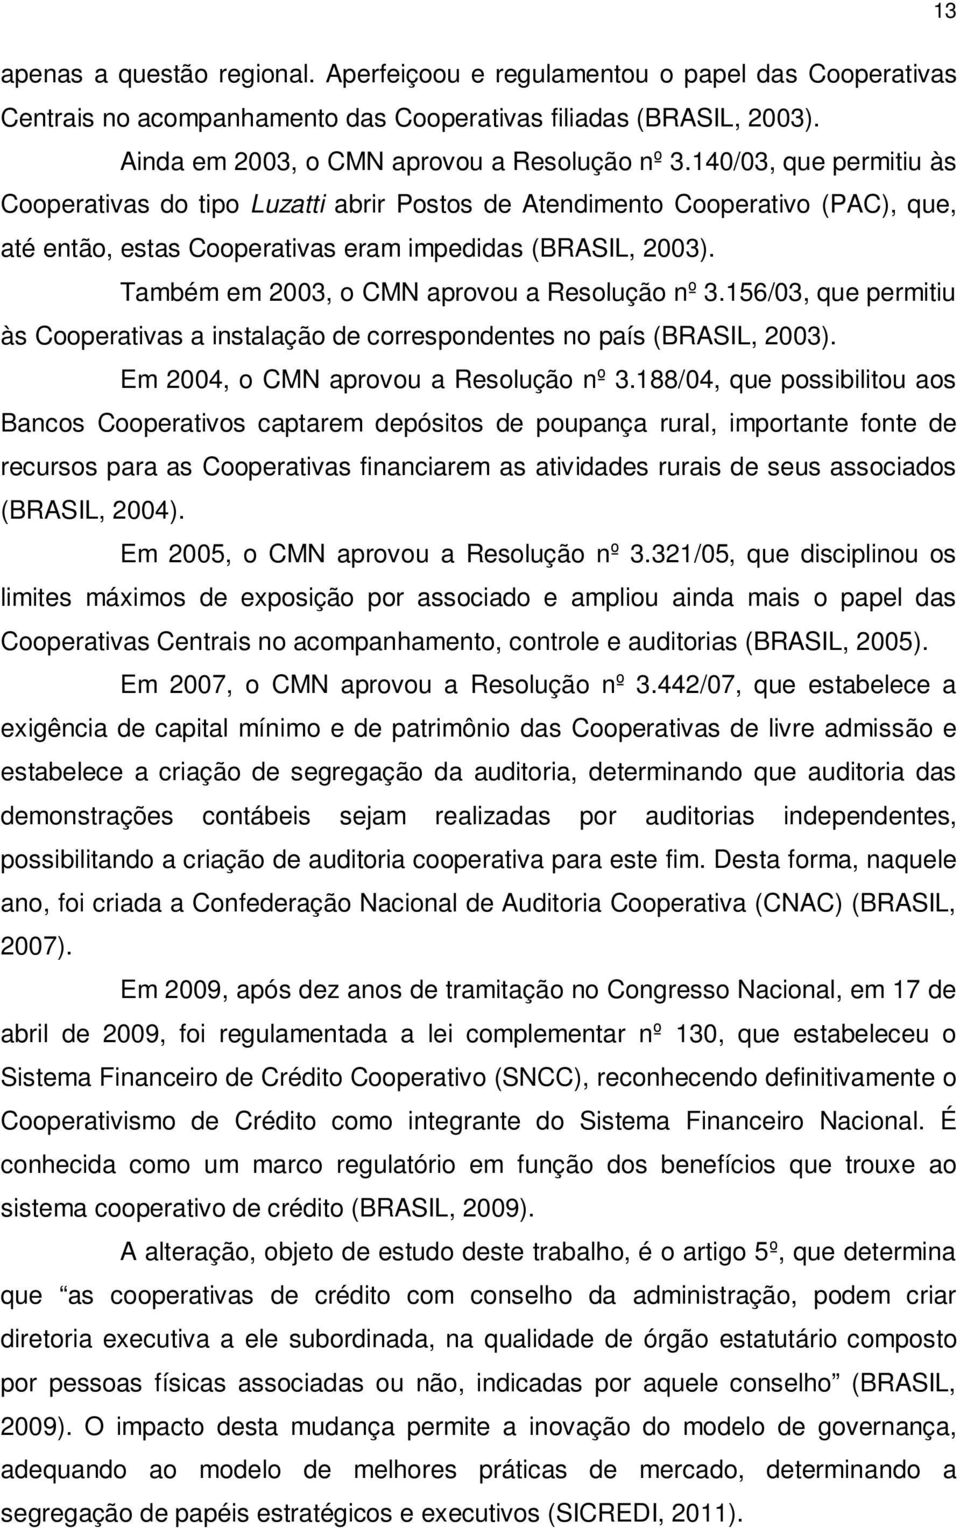 Também em 2003, o CMN aprovou a Resolução nº 3.156/03, que permitiu às Cooperativas a instalação de correspondentes no país (BRASIL, 2003). Em 2004, o CMN aprovou a Resolução nº 3.